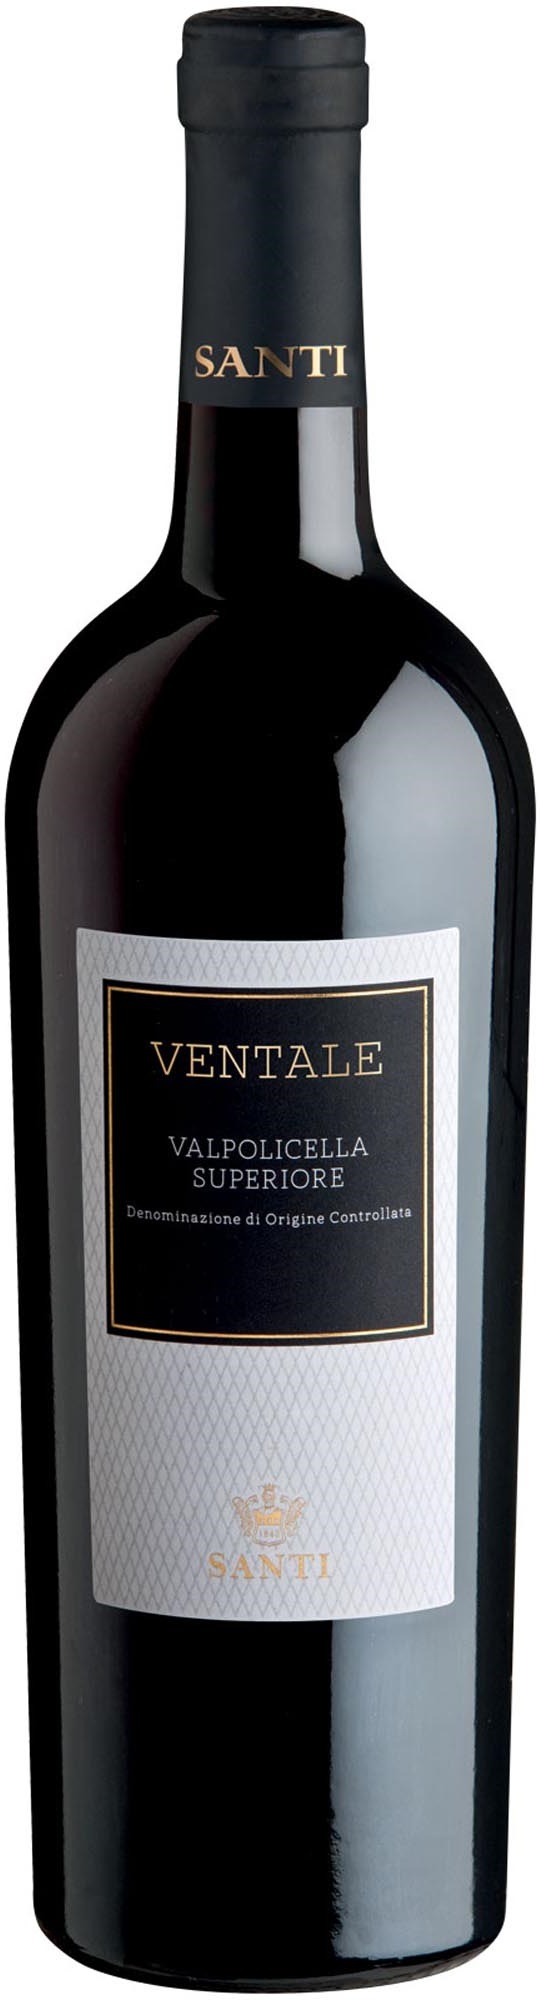 Valpolicella Superiore Ventale 2019 - Wein des Monats